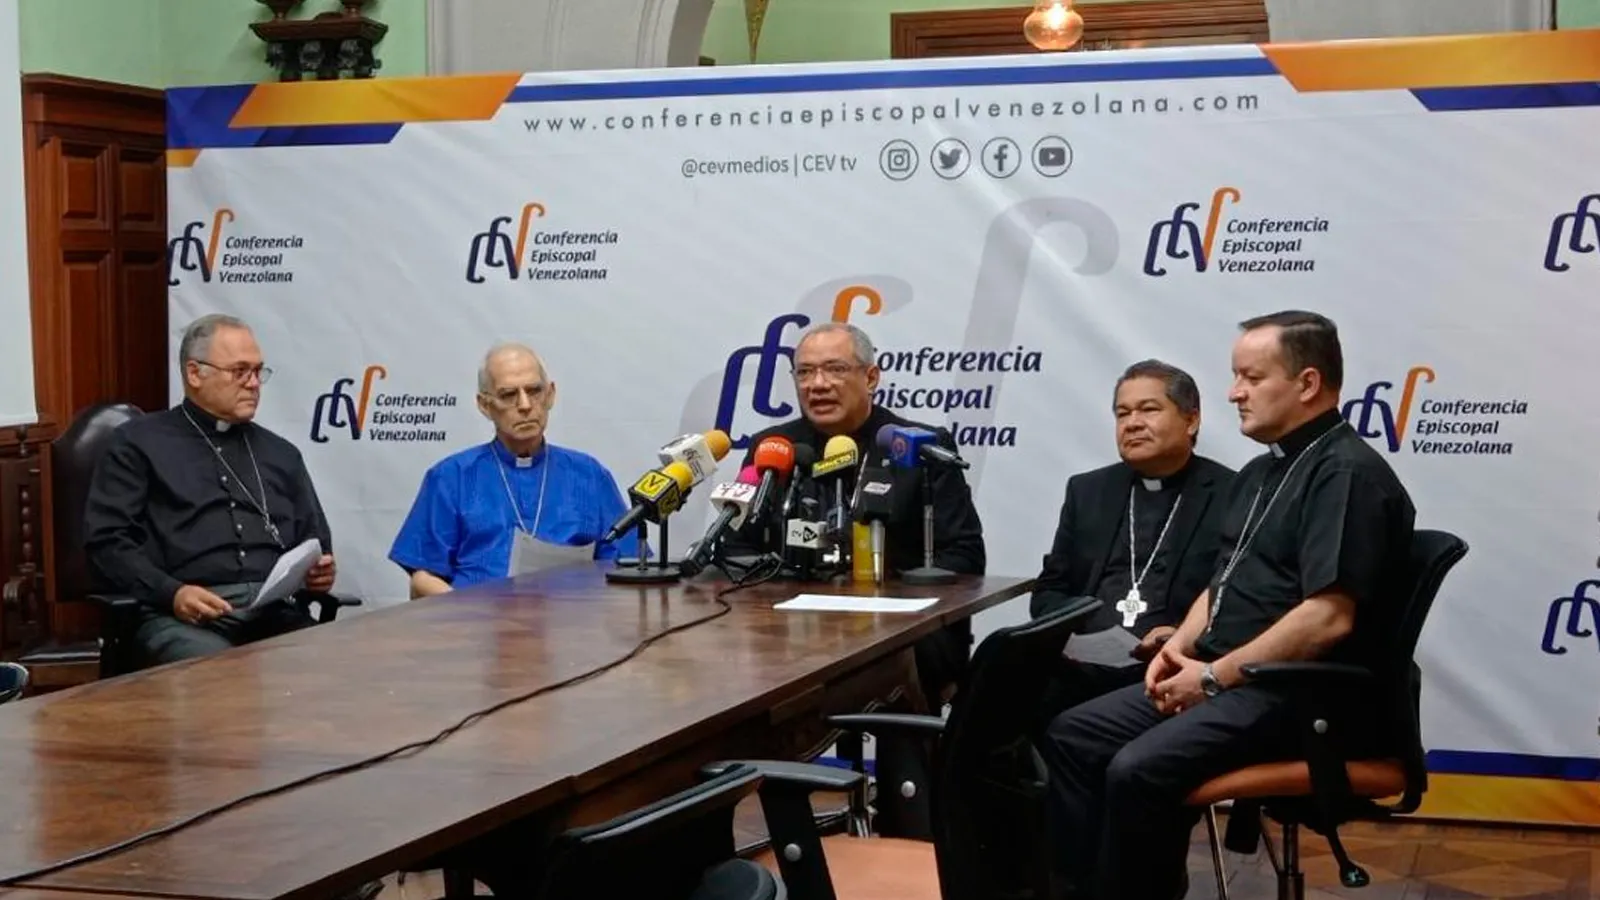 Obispos de Venezuela piden equidad en las próximas elecciones  presidenciales | ACI Prensa